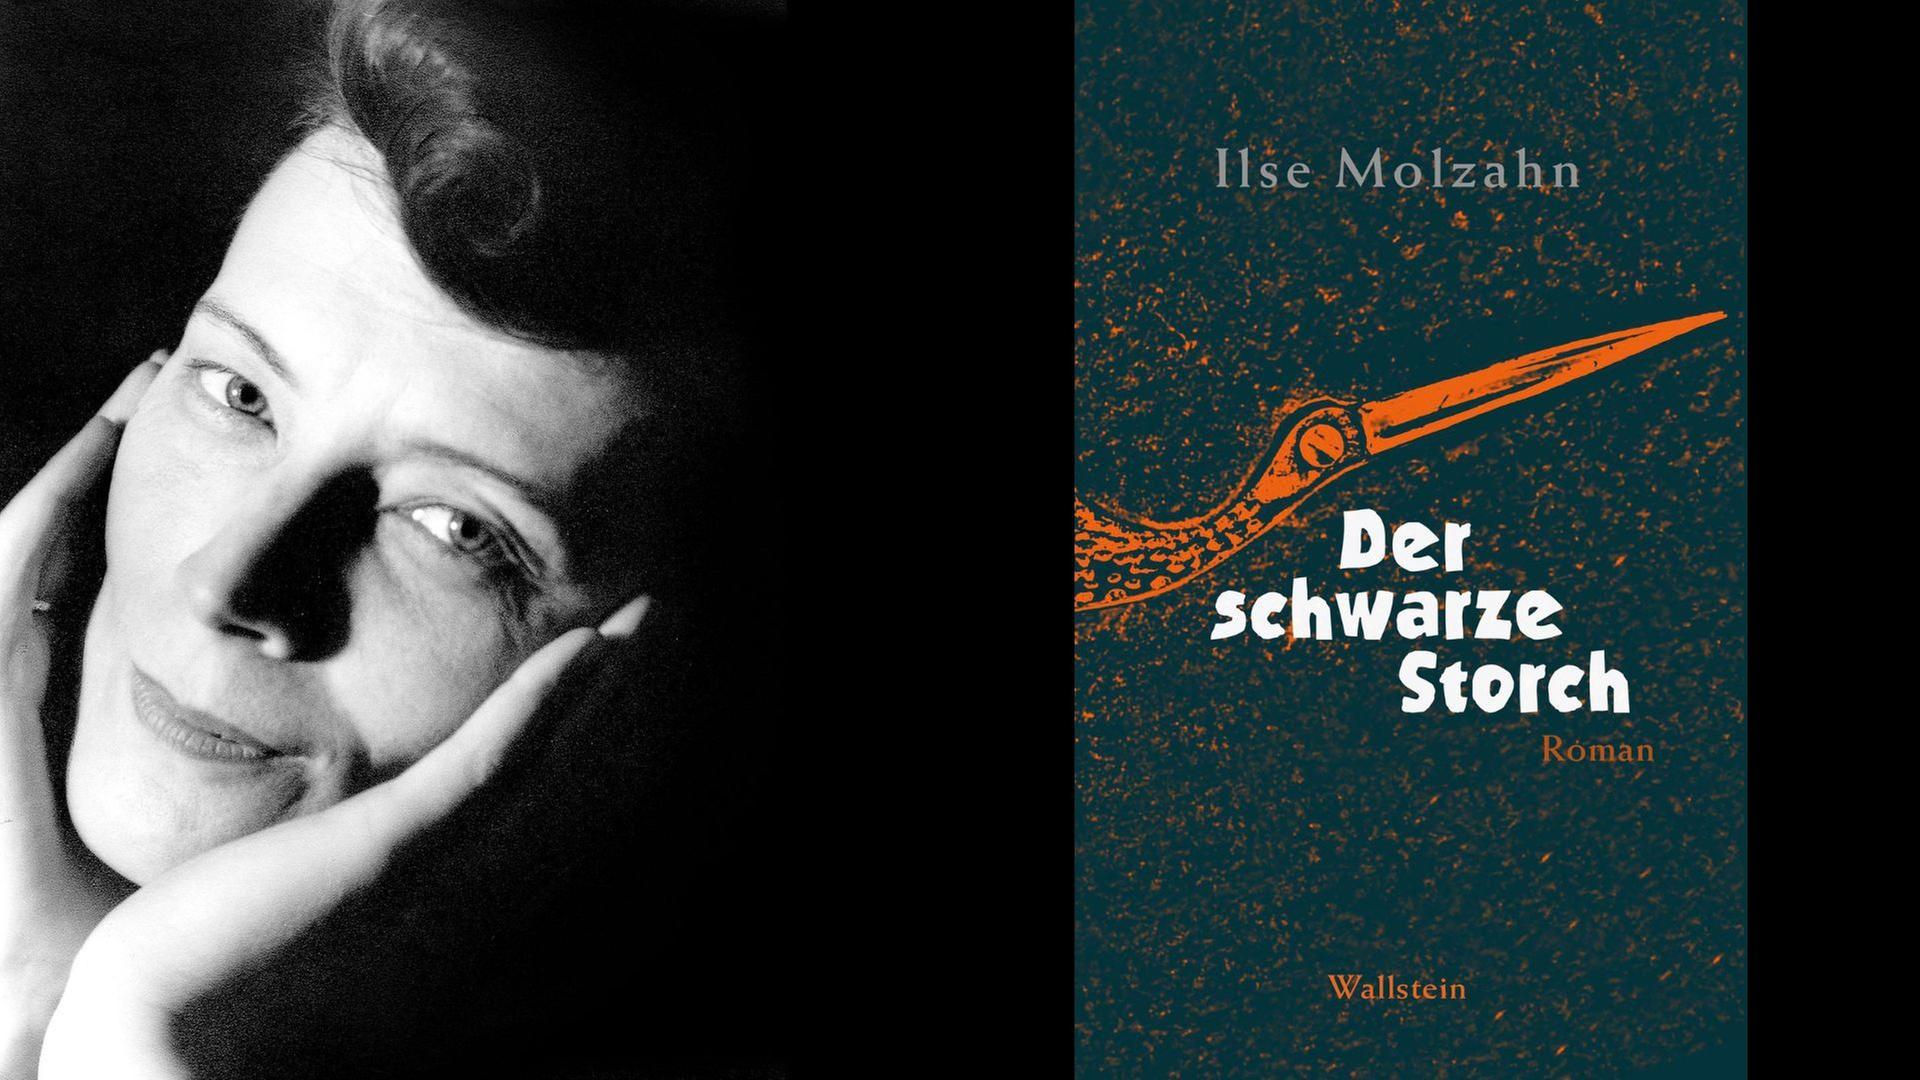 Ilse Molzahn: Der schwarze Storch
